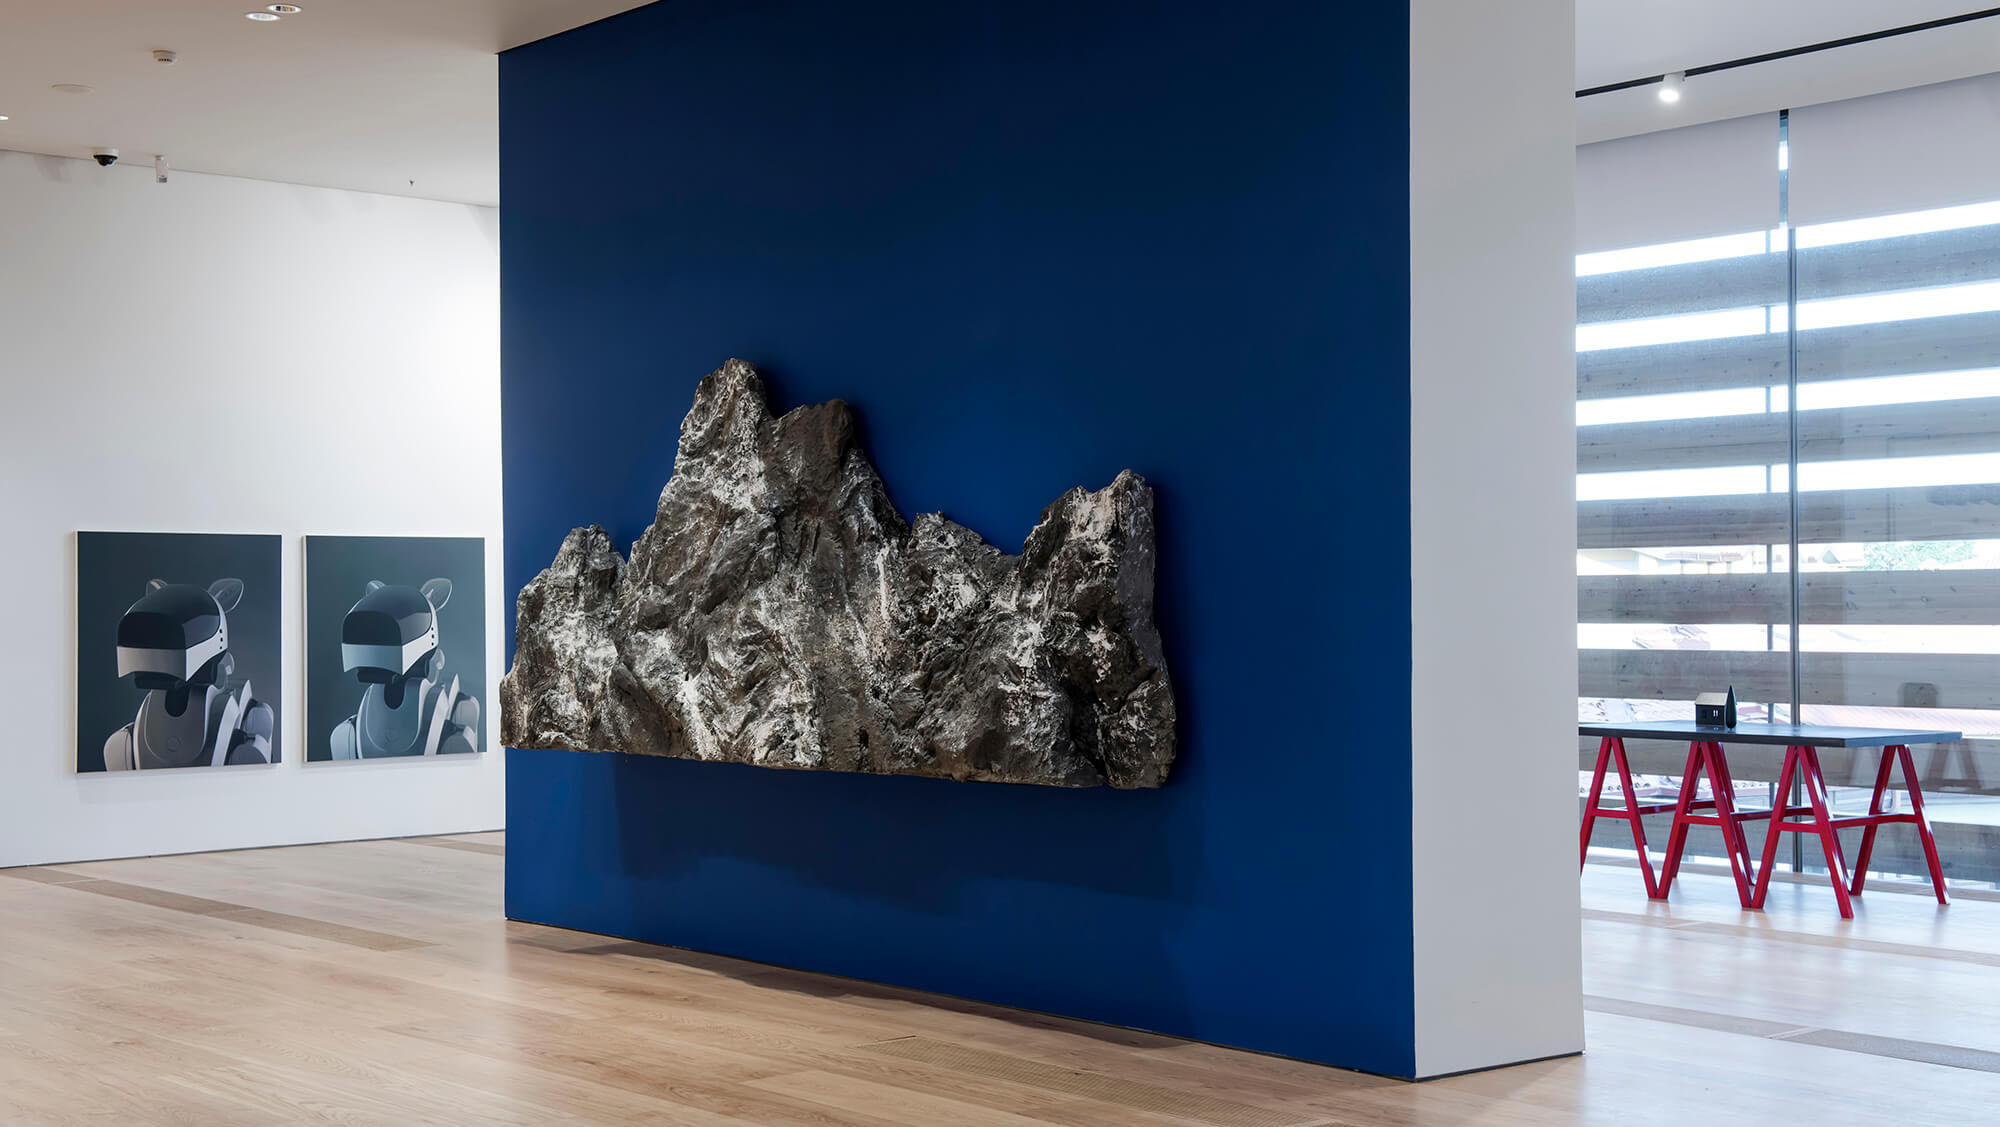 OMM - Odunpazarı Modern Müze, sergi alanından genel görünüm. Eserler: Yağız Özgen (sol), Guido Casaretto (orta), Osman Dinç (sağ). Fotoğraf: Kayhan Kaygusuz